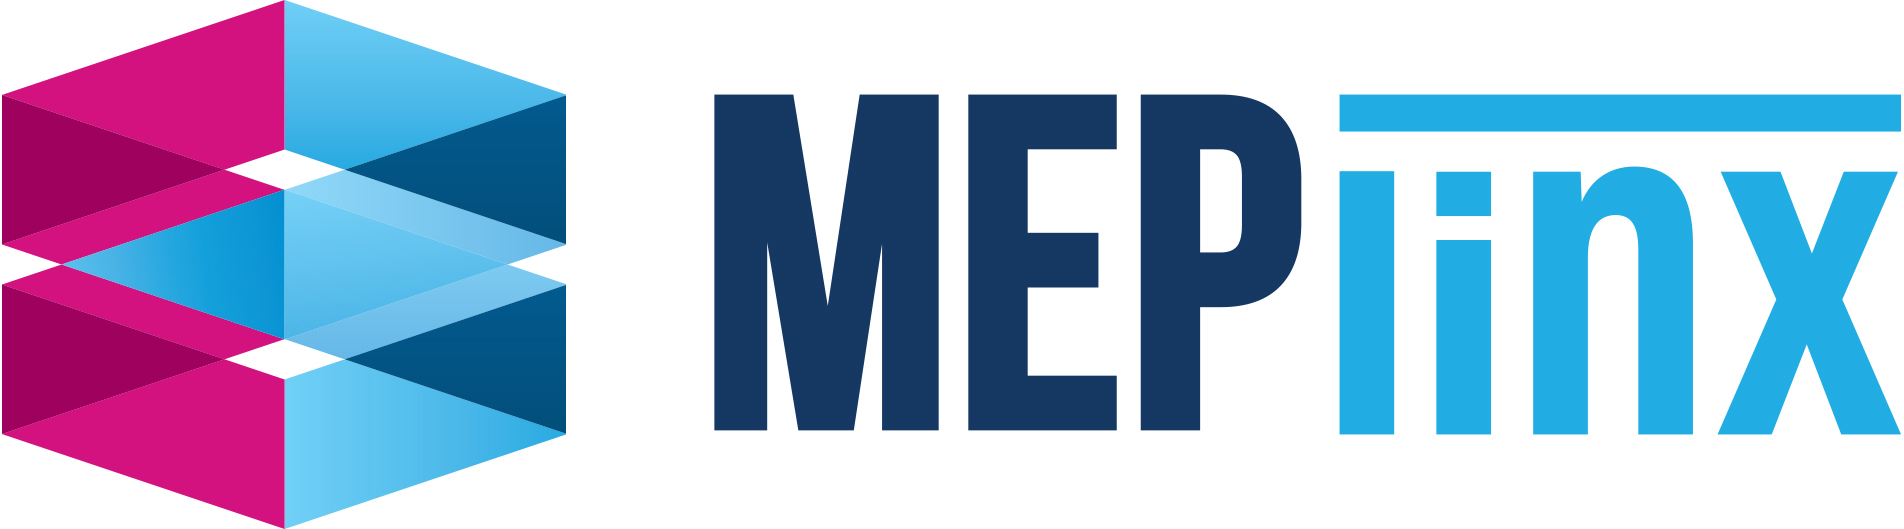 MEPworx_Logo.png